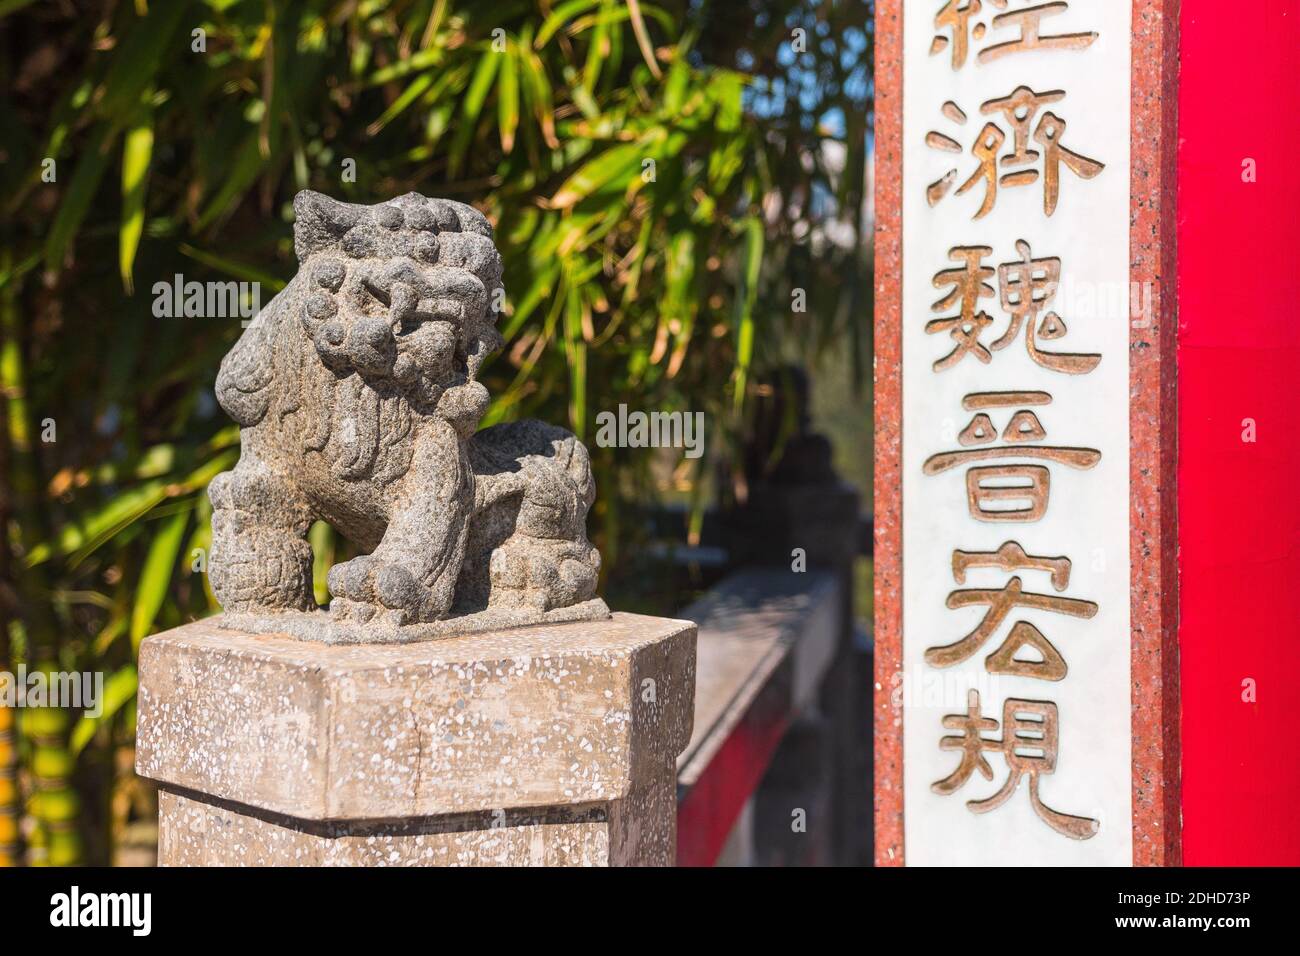 Belle statue de pierre de Lion en gros plan. Pavillon du lion (le pic), Hong Kong, Chine. Assis à côté de l'entrée du Pavillon écrit en chinois. Banque D'Images